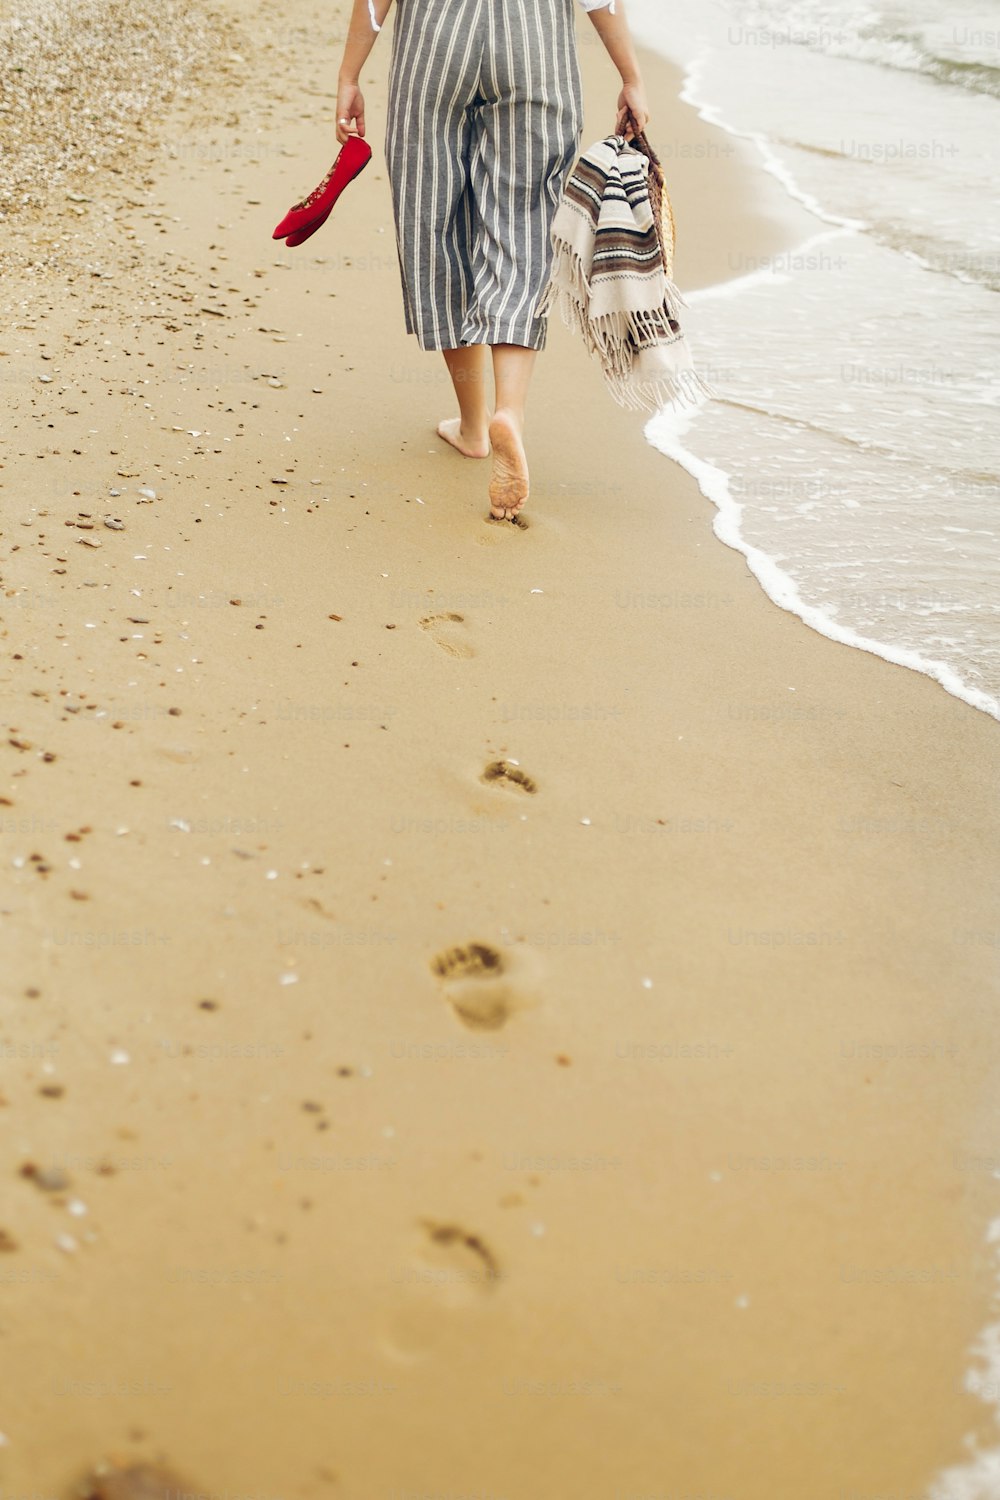 ビーチを裸足で歩く女性、脚の後ろ姿。砂浜でリラックスし、靴とバッグを手に歩いている若い女の子。夏休みのコンセプト